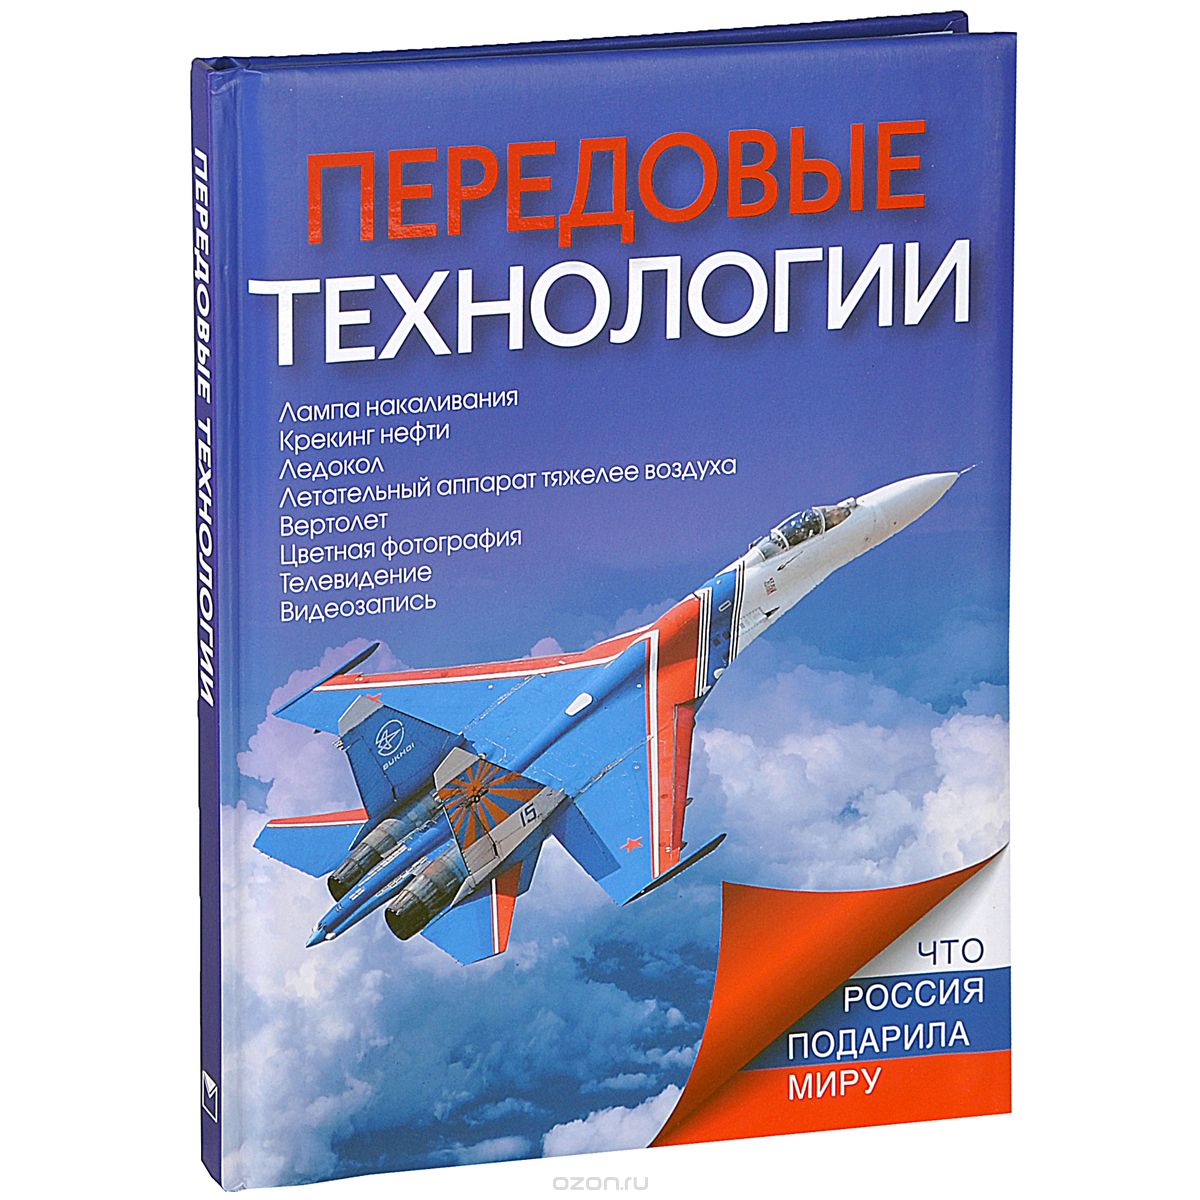 Скачать книгу "Передовые технологии, Т. Б. Ивашкова"